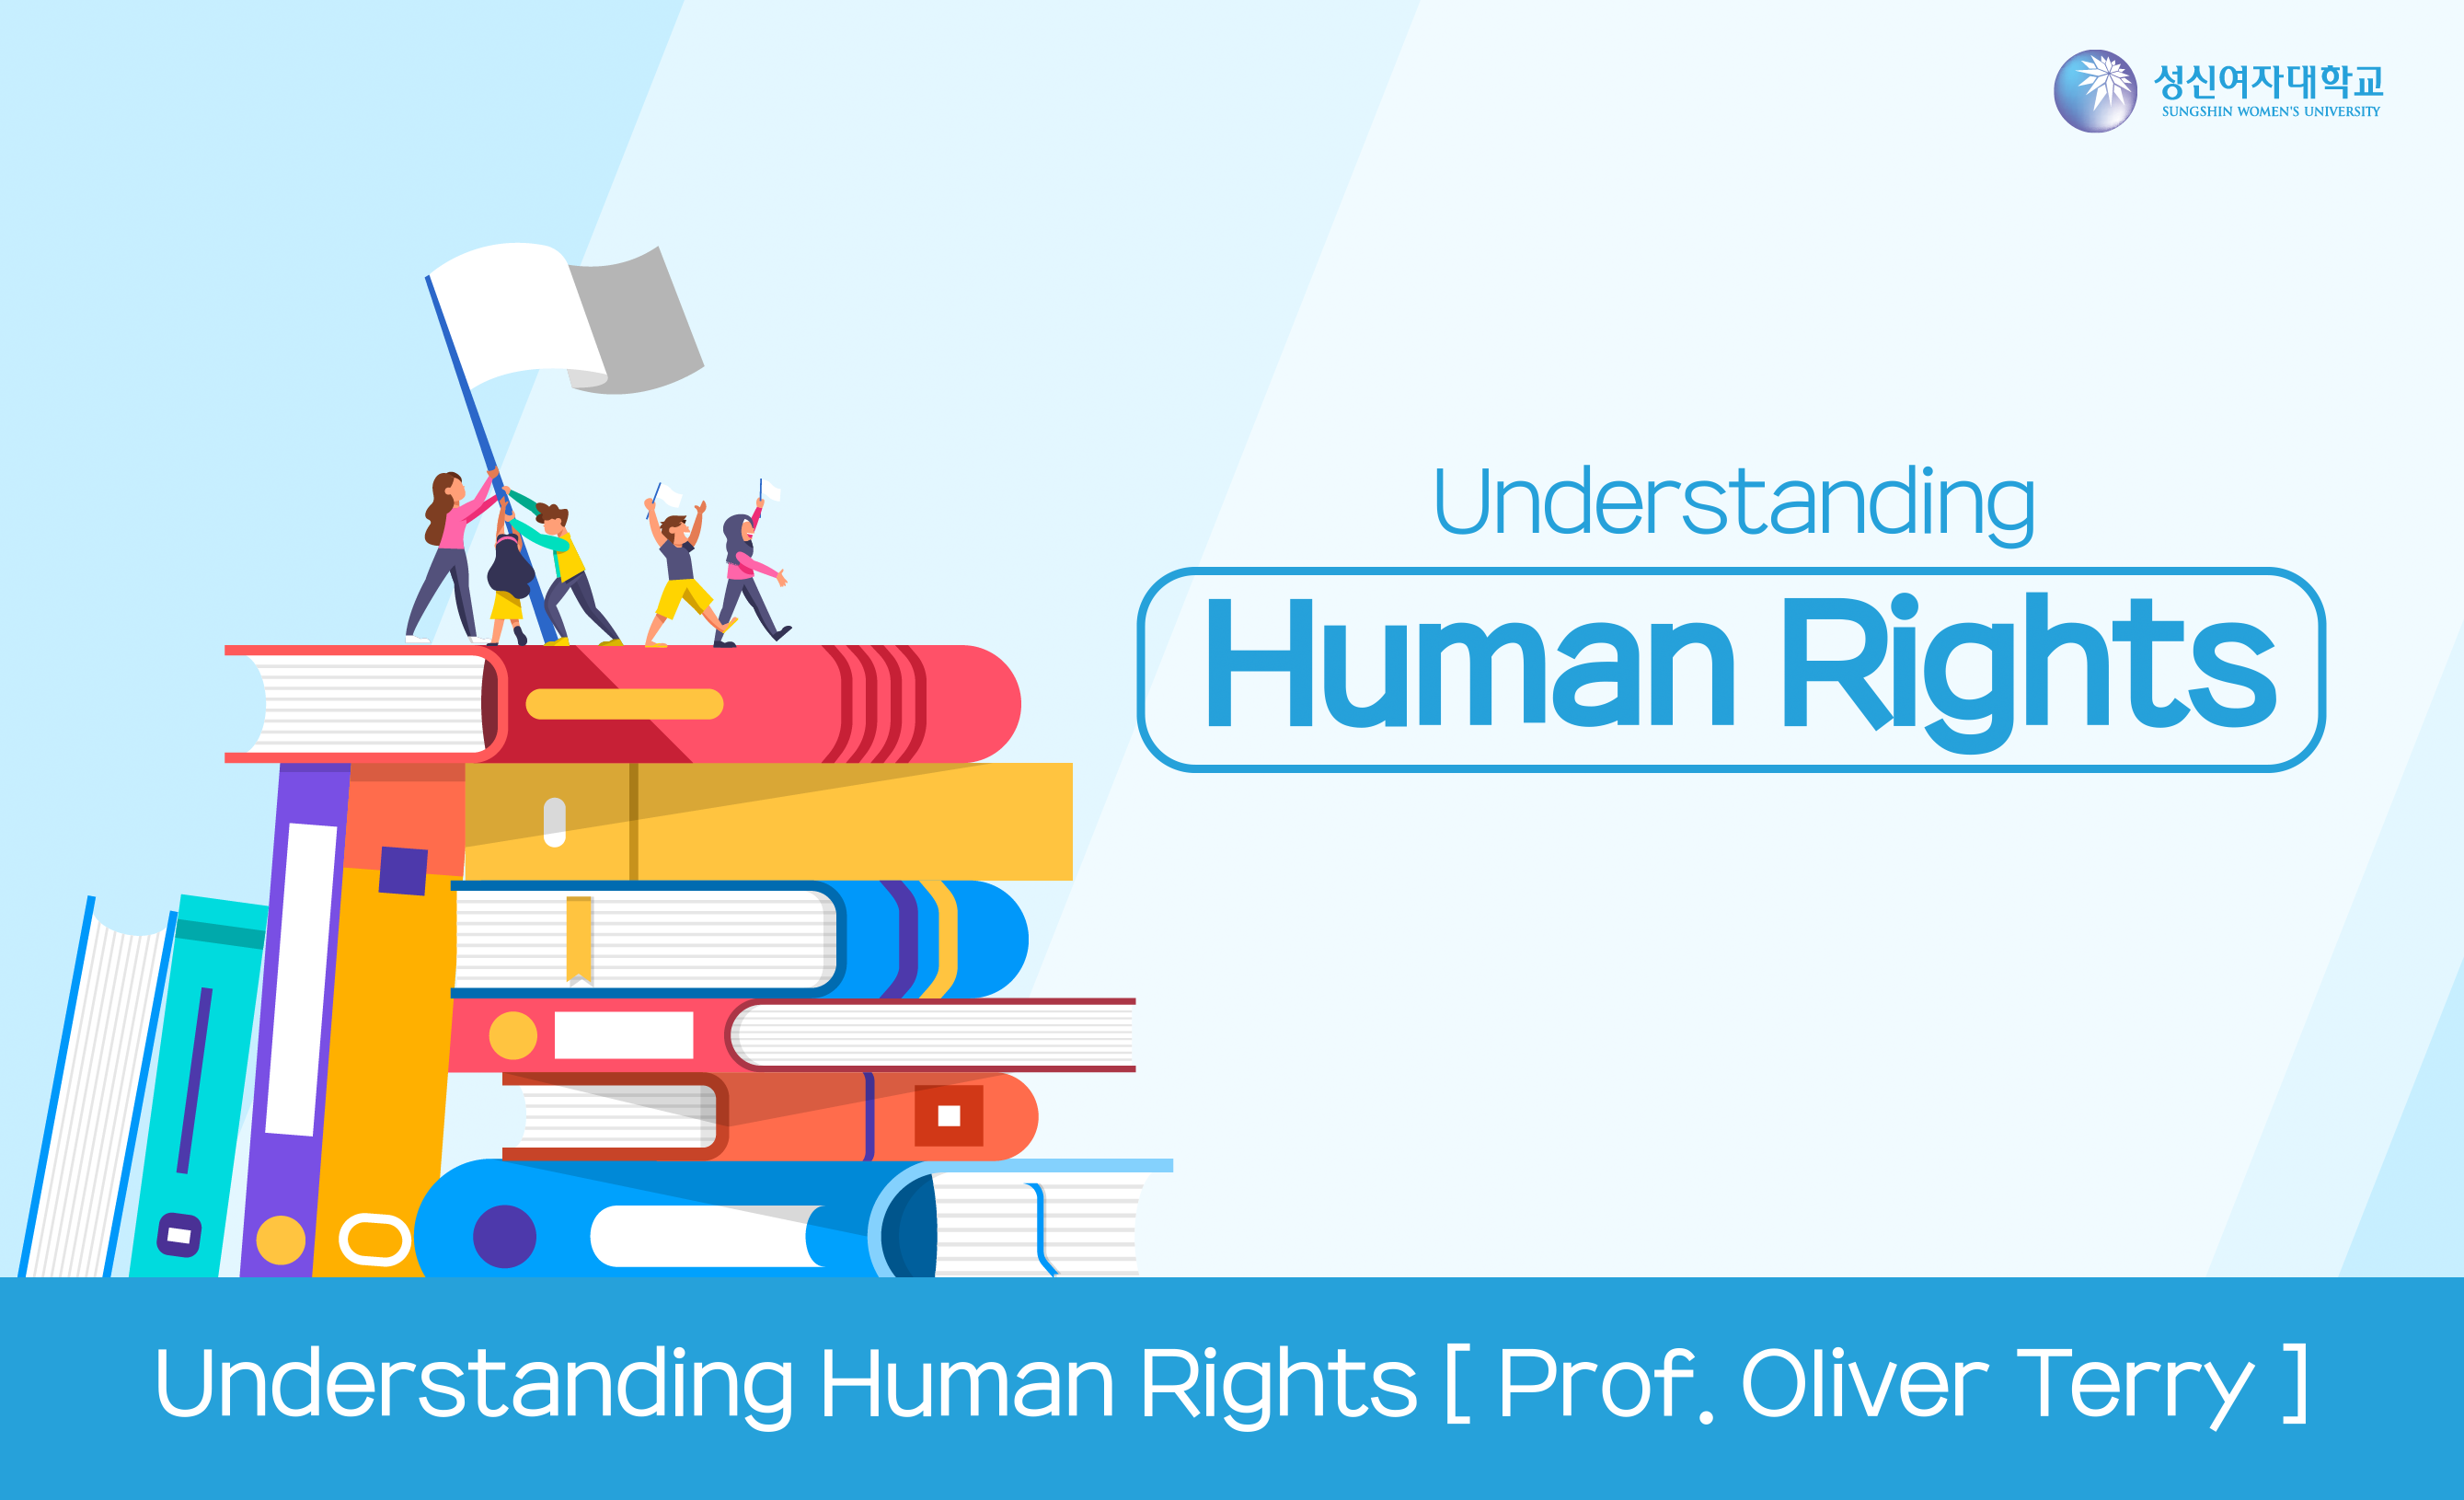 Understanding Human Rights 개강일 2018-11-19 종강일 2019-01-06 강좌상태 종료